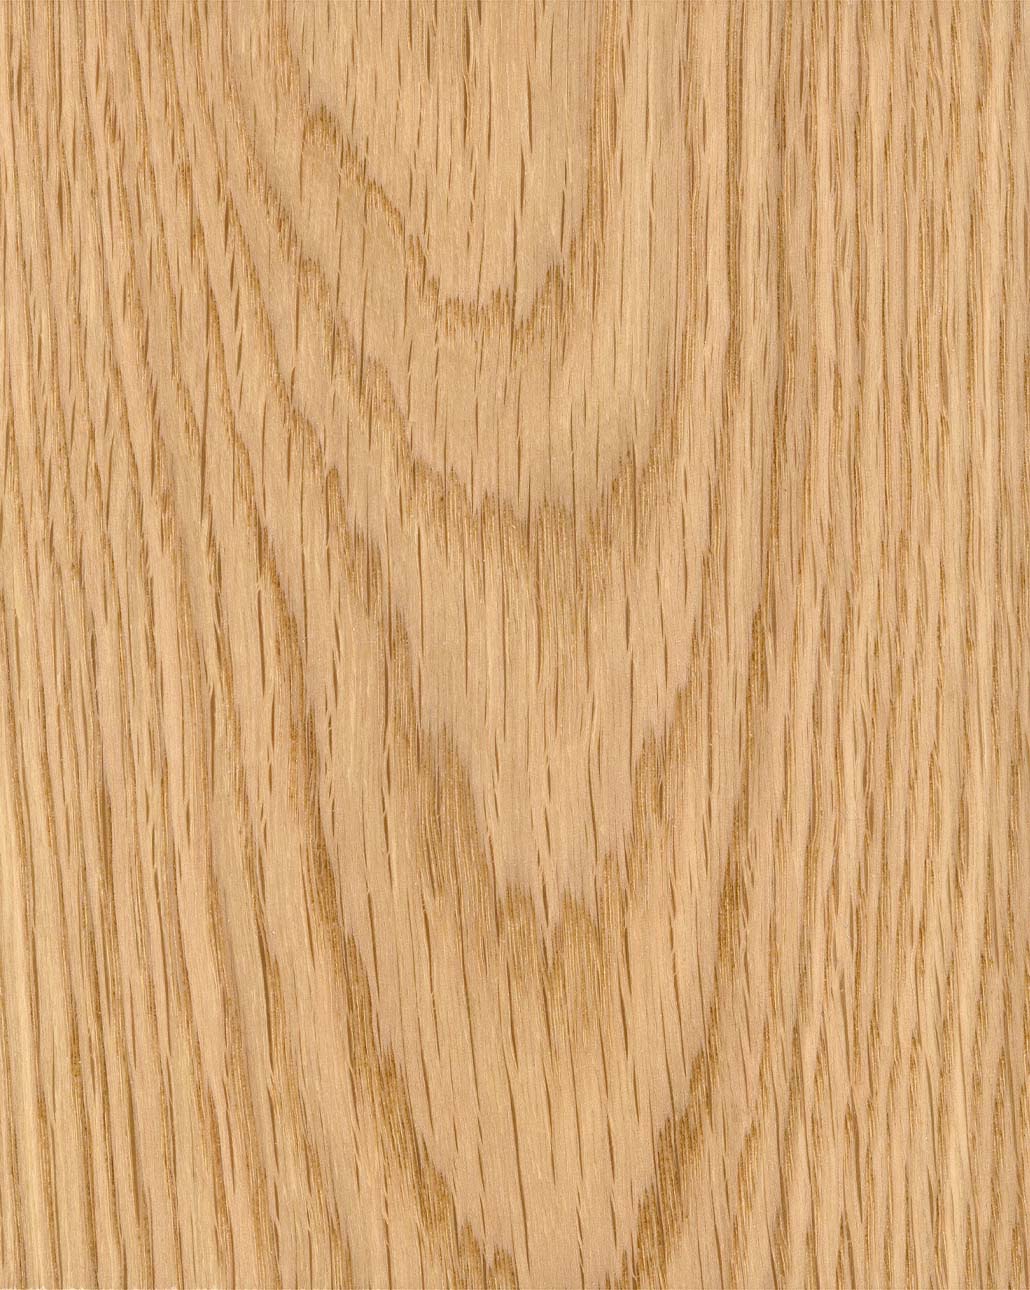 Oak veneer panel